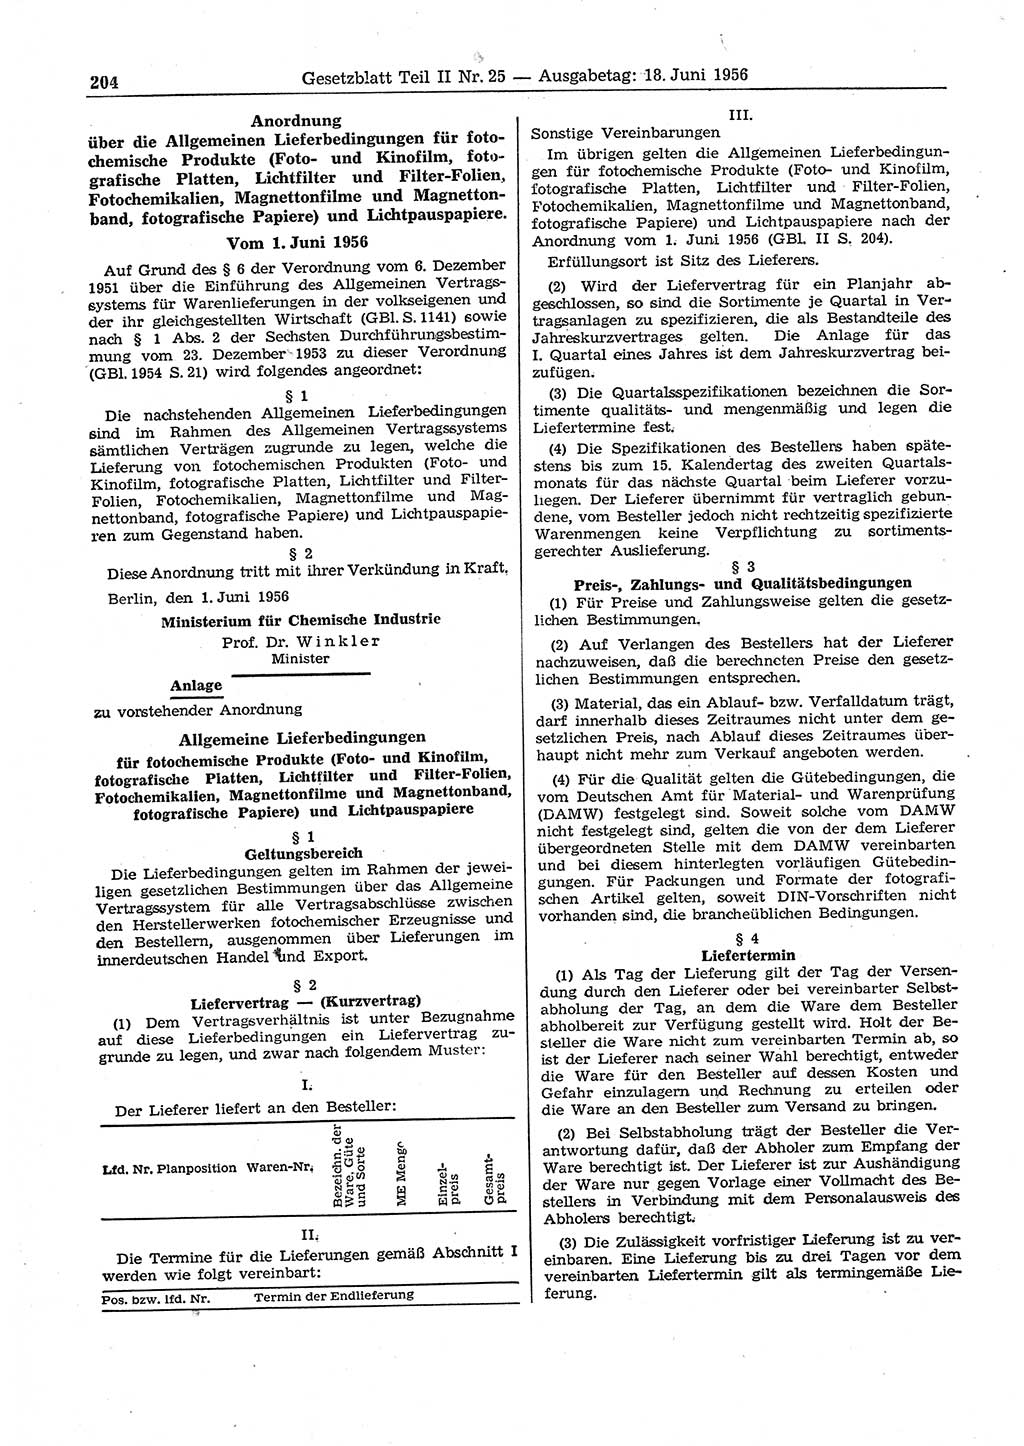 Gesetzblatt (GBl.) der Deutschen Demokratischen Republik (DDR) Teil ⅠⅠ 1956, Seite 204 (GBl. DDR ⅠⅠ 1956, S. 204)